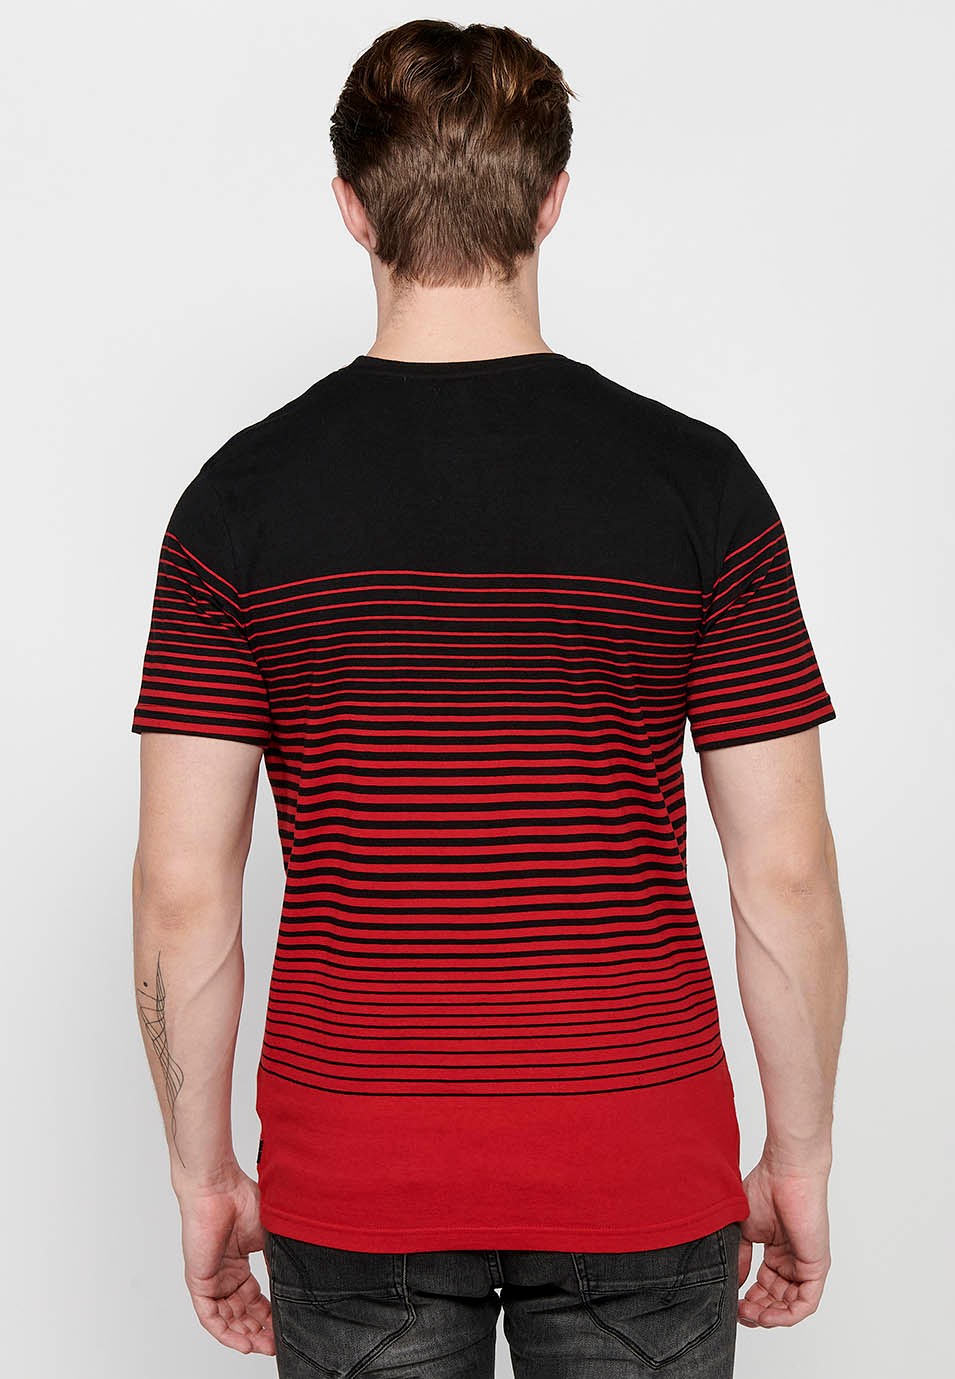 Camiseta de manga corta, estampado degradado a rayas, cuello redondo, color rojo para hombre 4